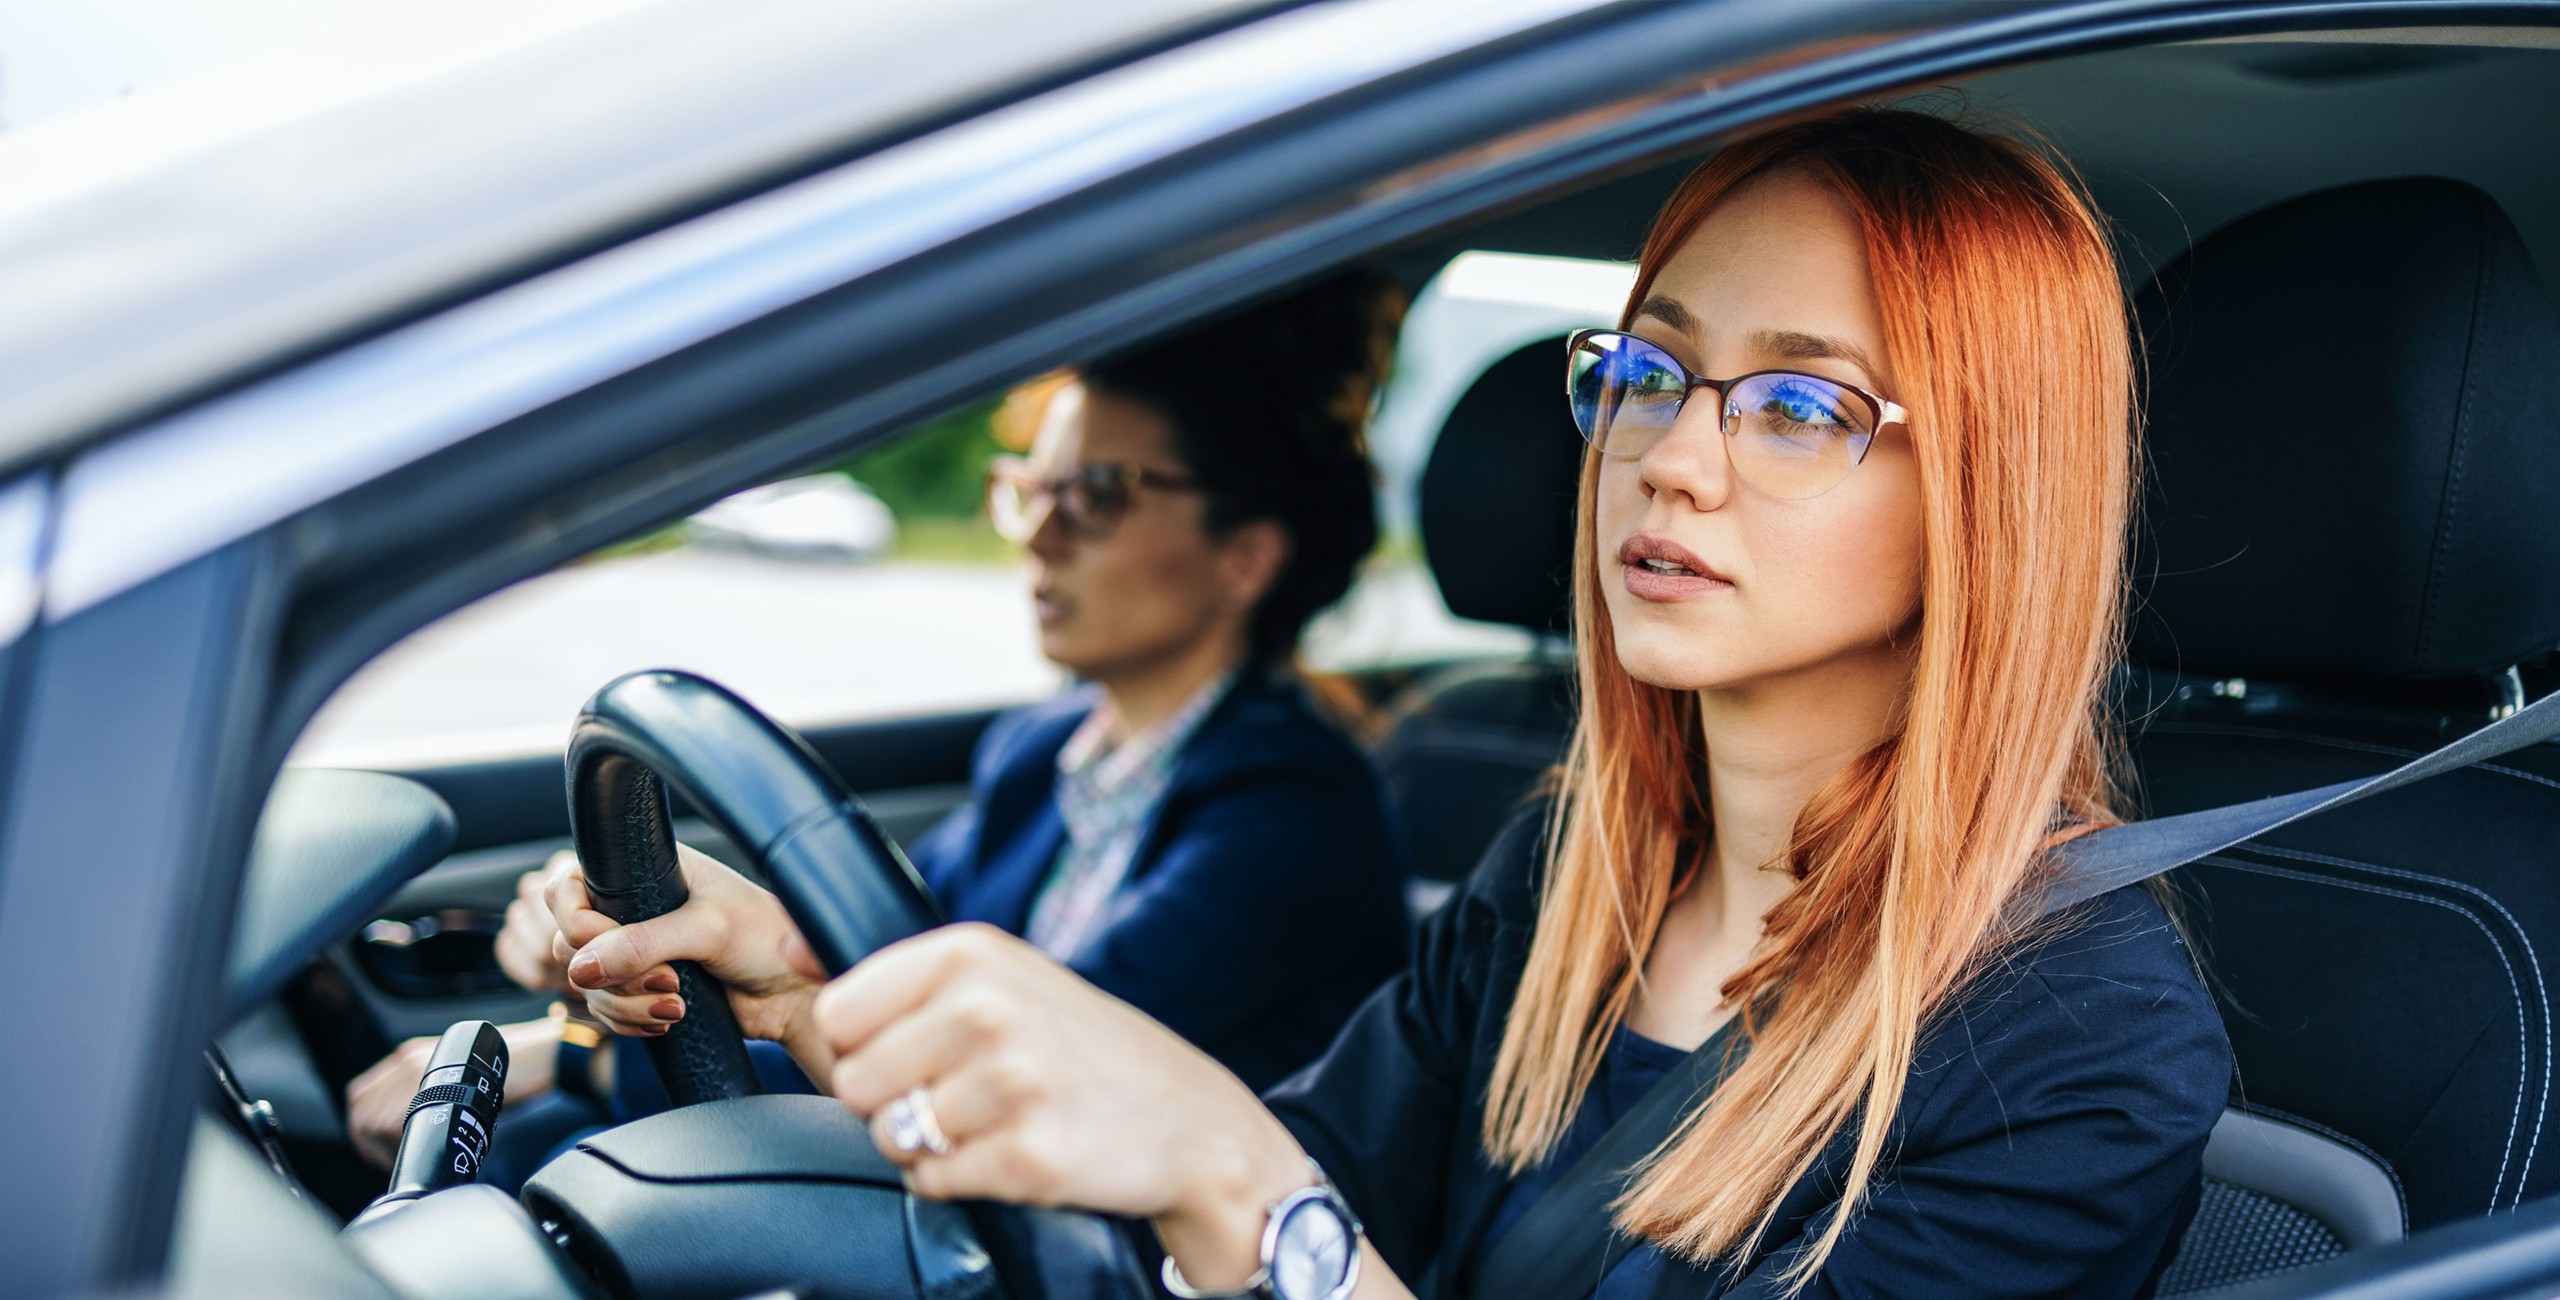 Une jeune femme rousse à lunettes est installée au volant et regarde la route attentivement, tandis qu’une passagère plus âgée est assise à côté d’elle.